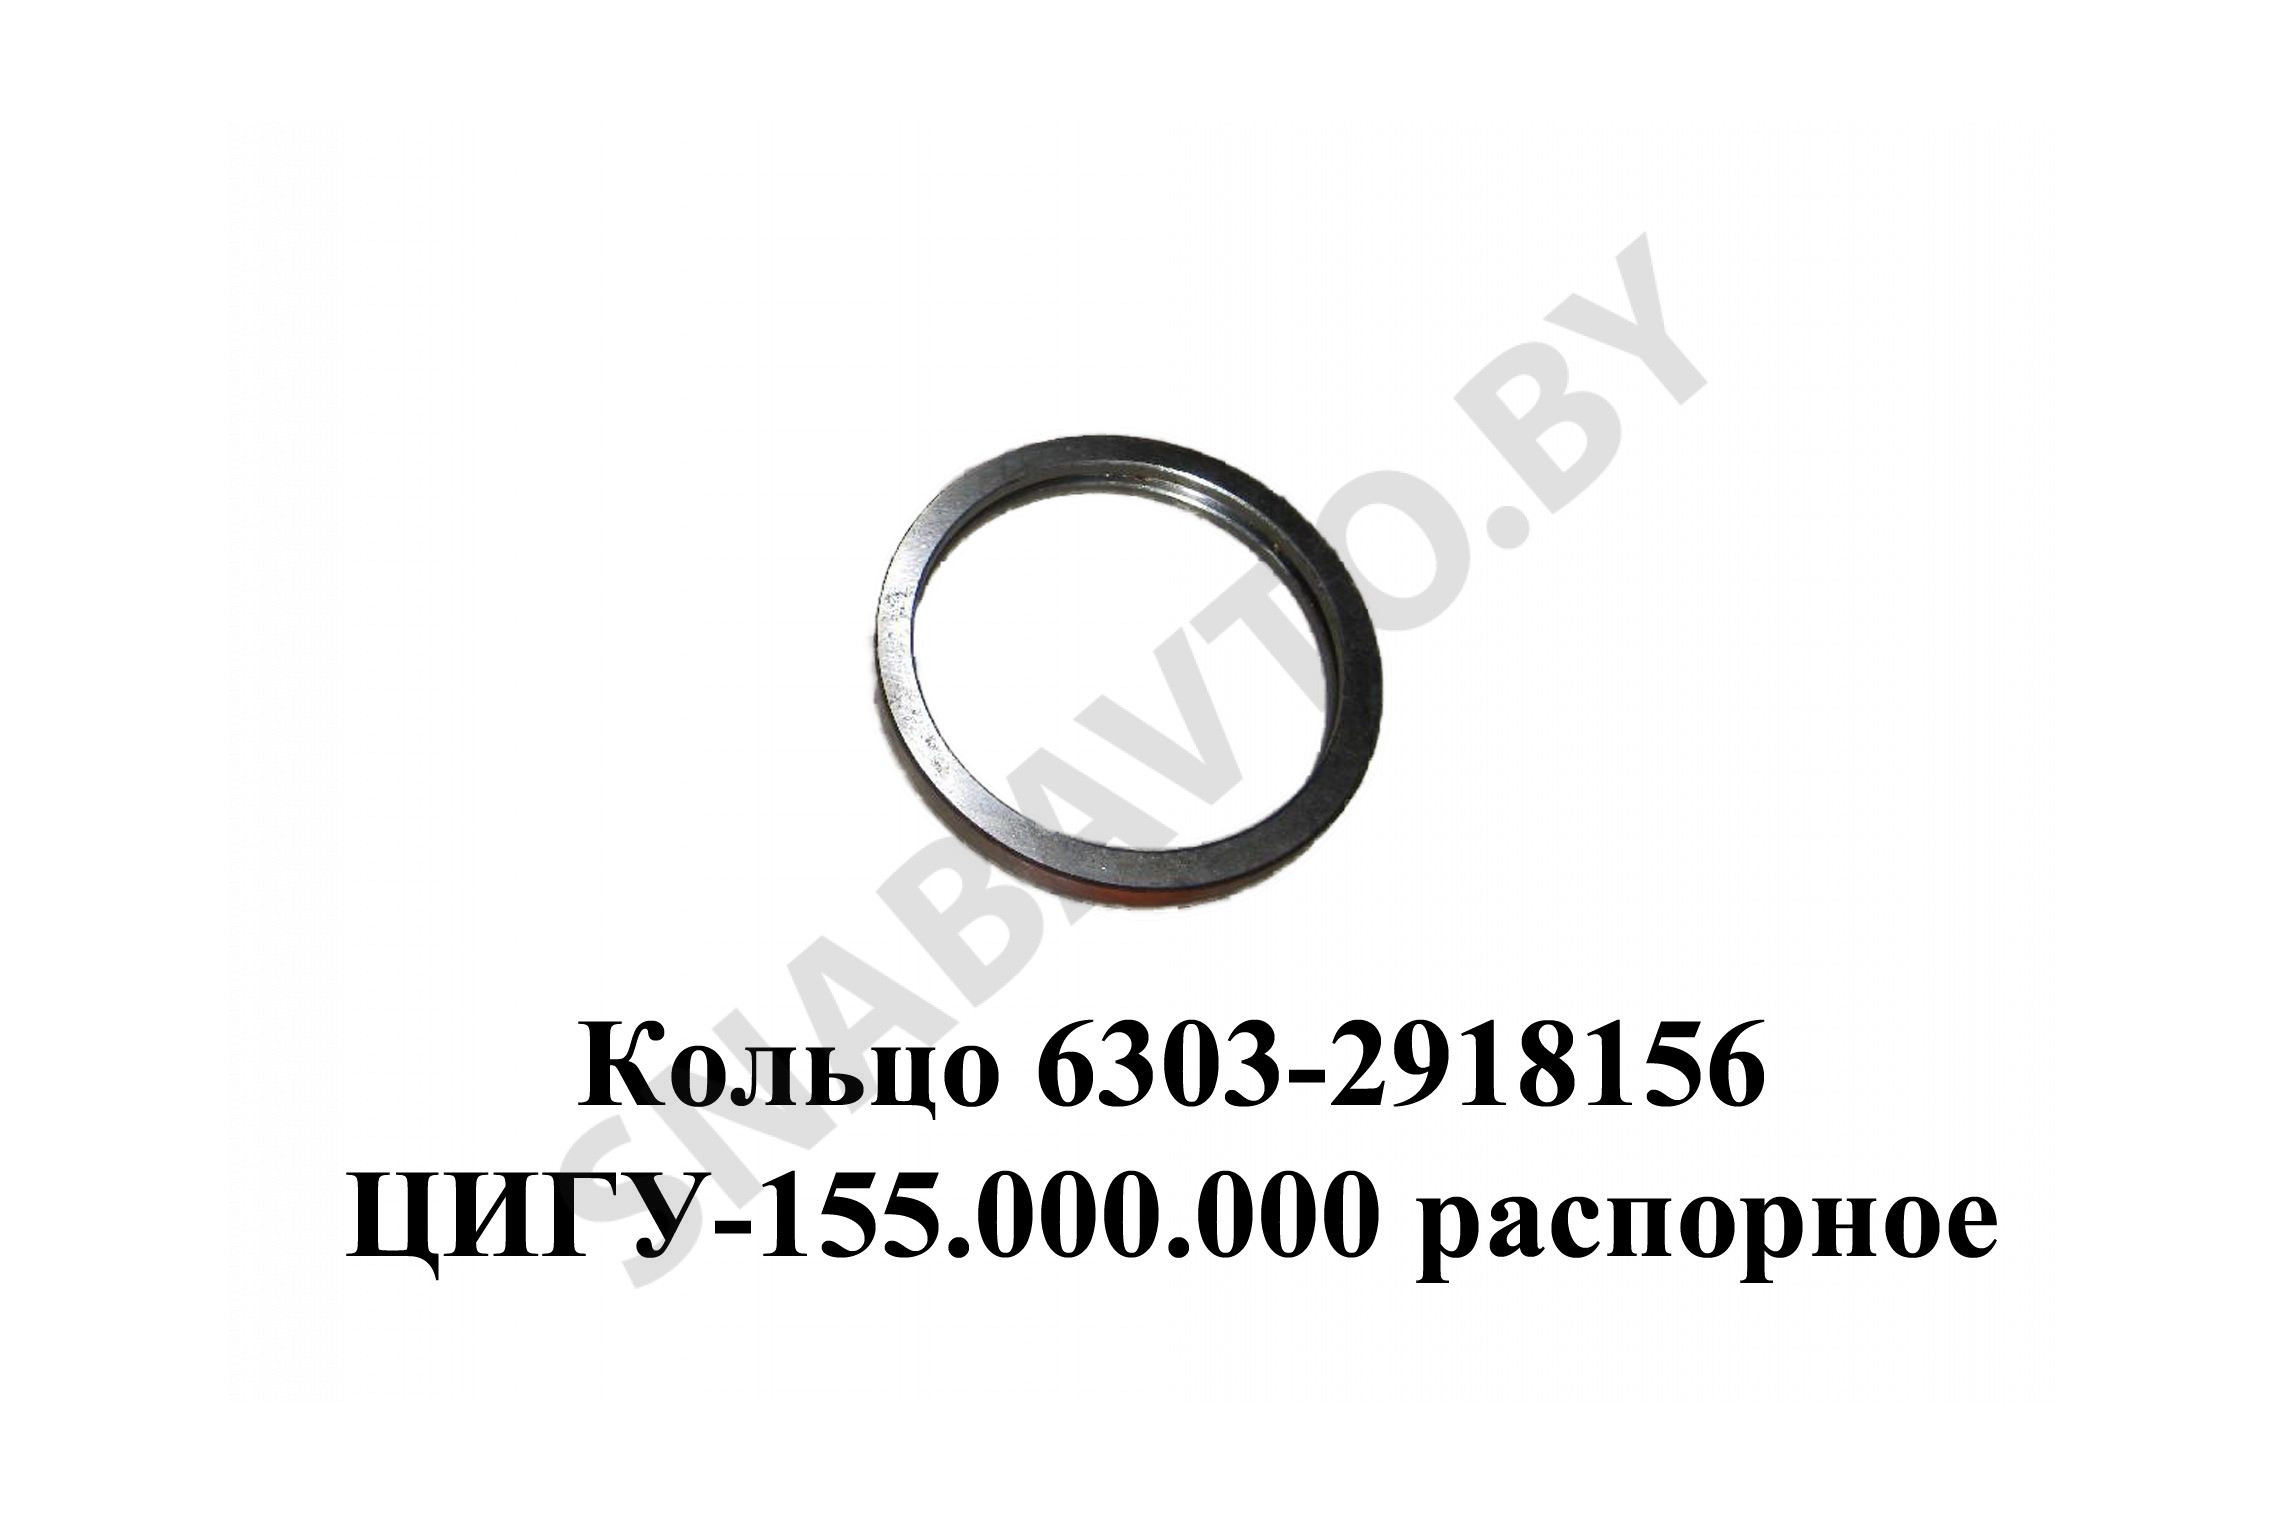 Кольцо  ЦИГУ-155.000.000 распорное оси балансира 6303-2918156, Лайтимет